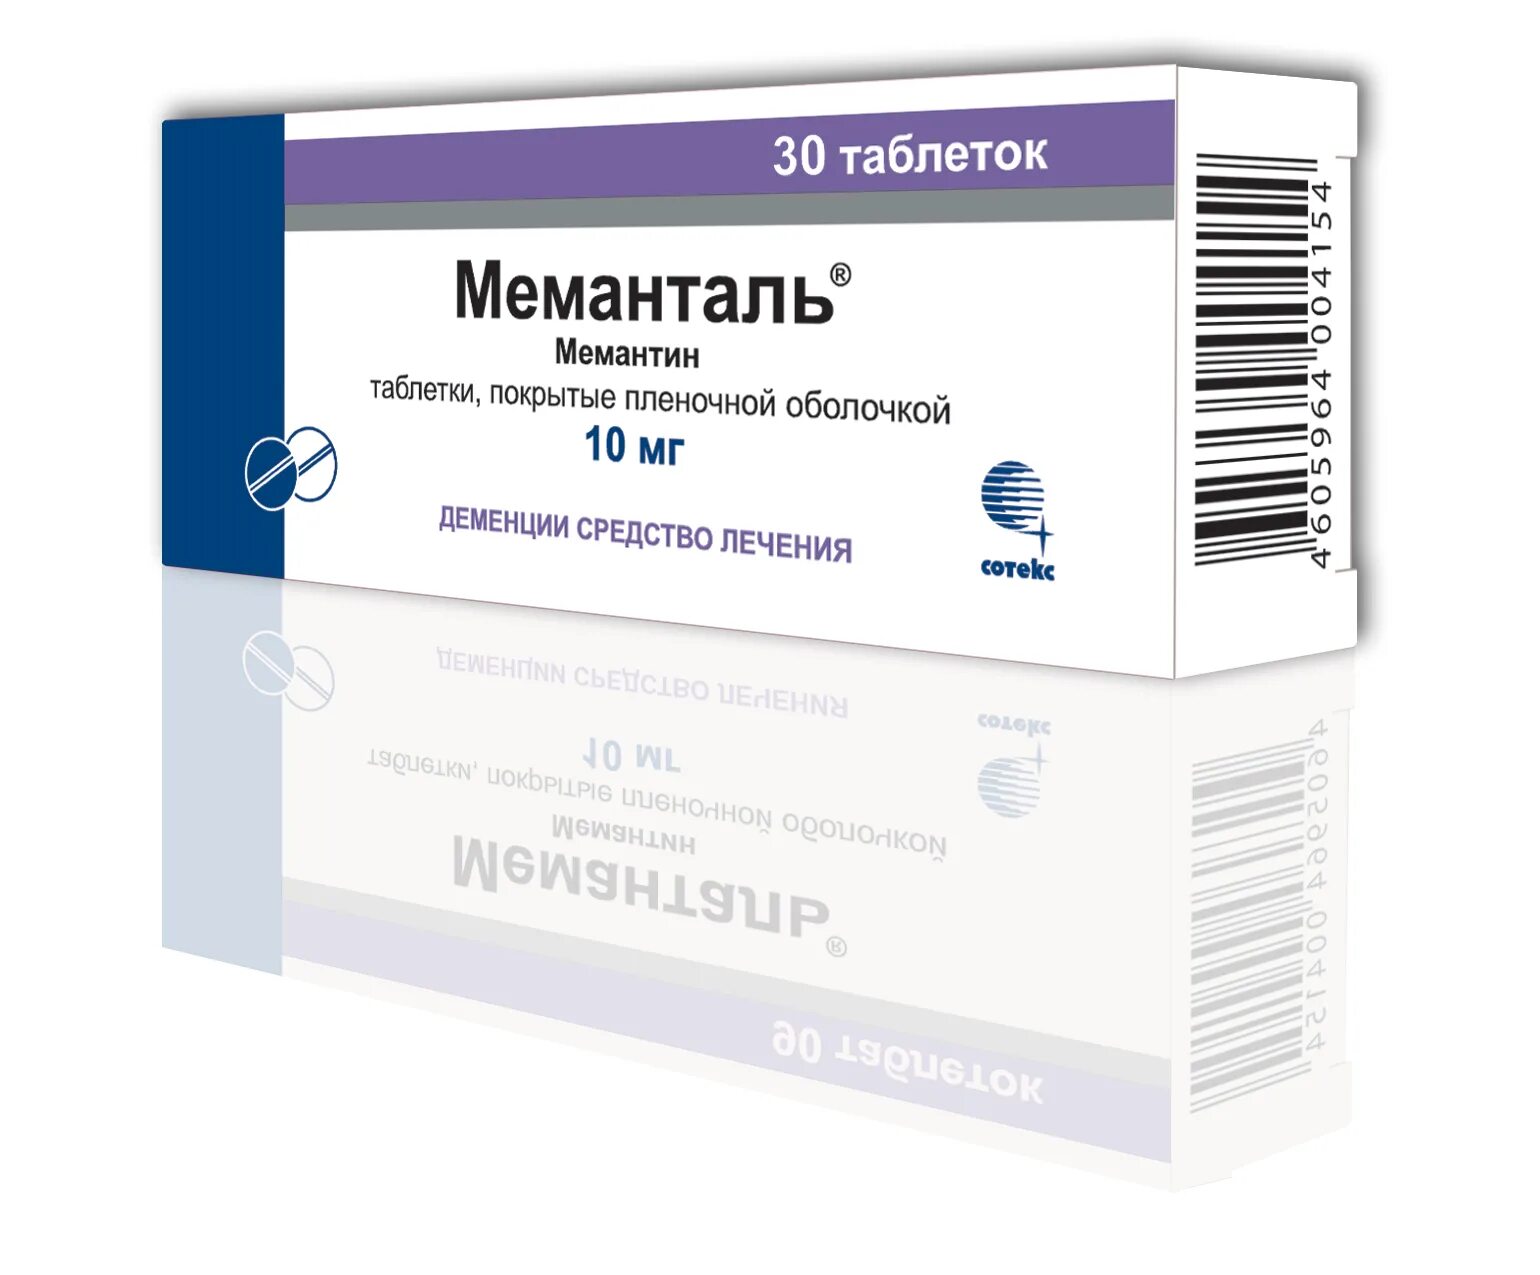 Мемантин Меманталь. Меманталь 10 мг. Таблетки от деменции мемантин. Фламадекс таблетки. Фламадекс уколы показания к применению отзывы цена